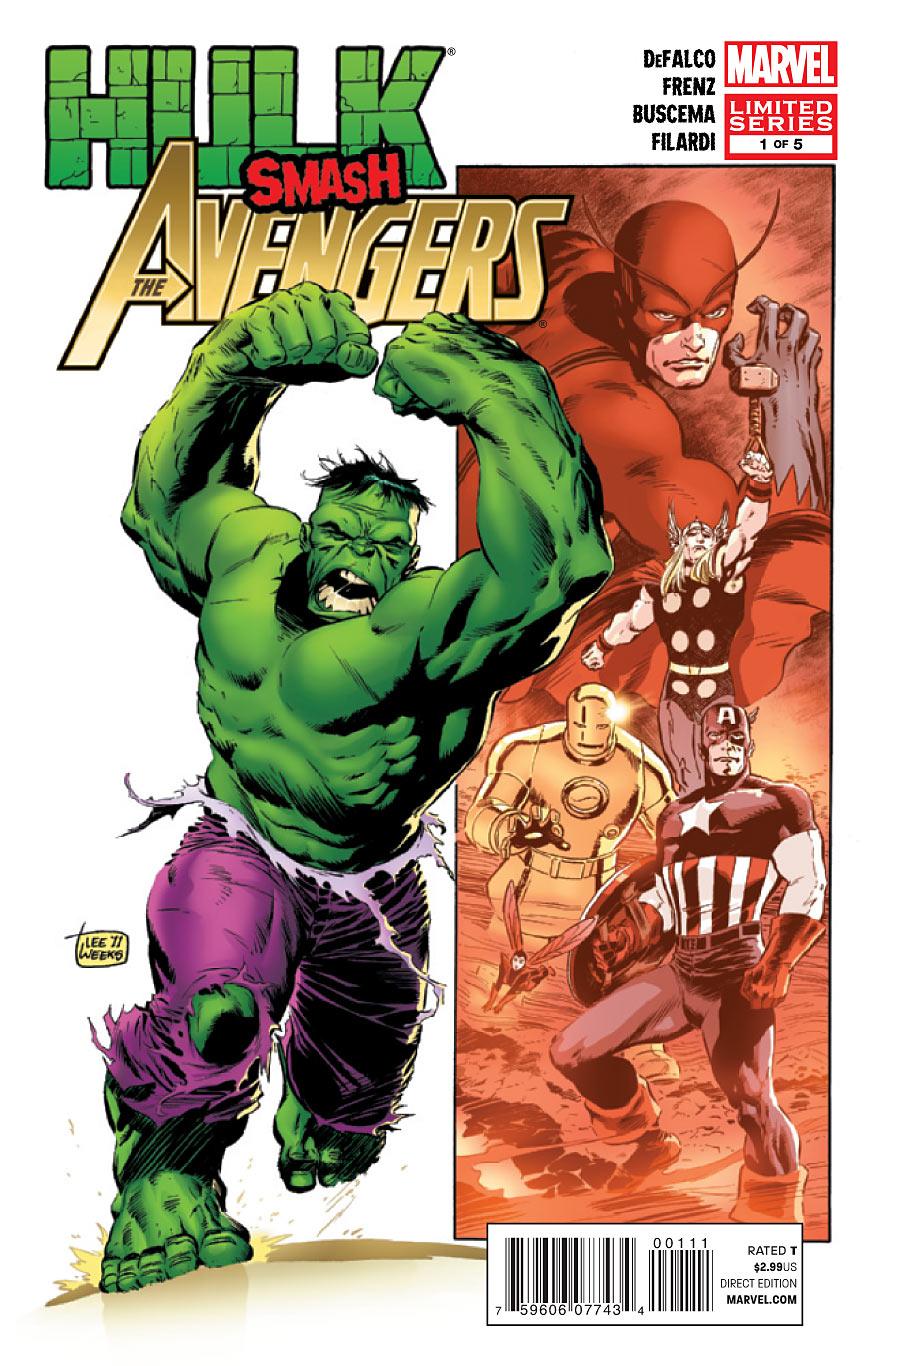 Hulk Smash Avengers Vol. 1 #1